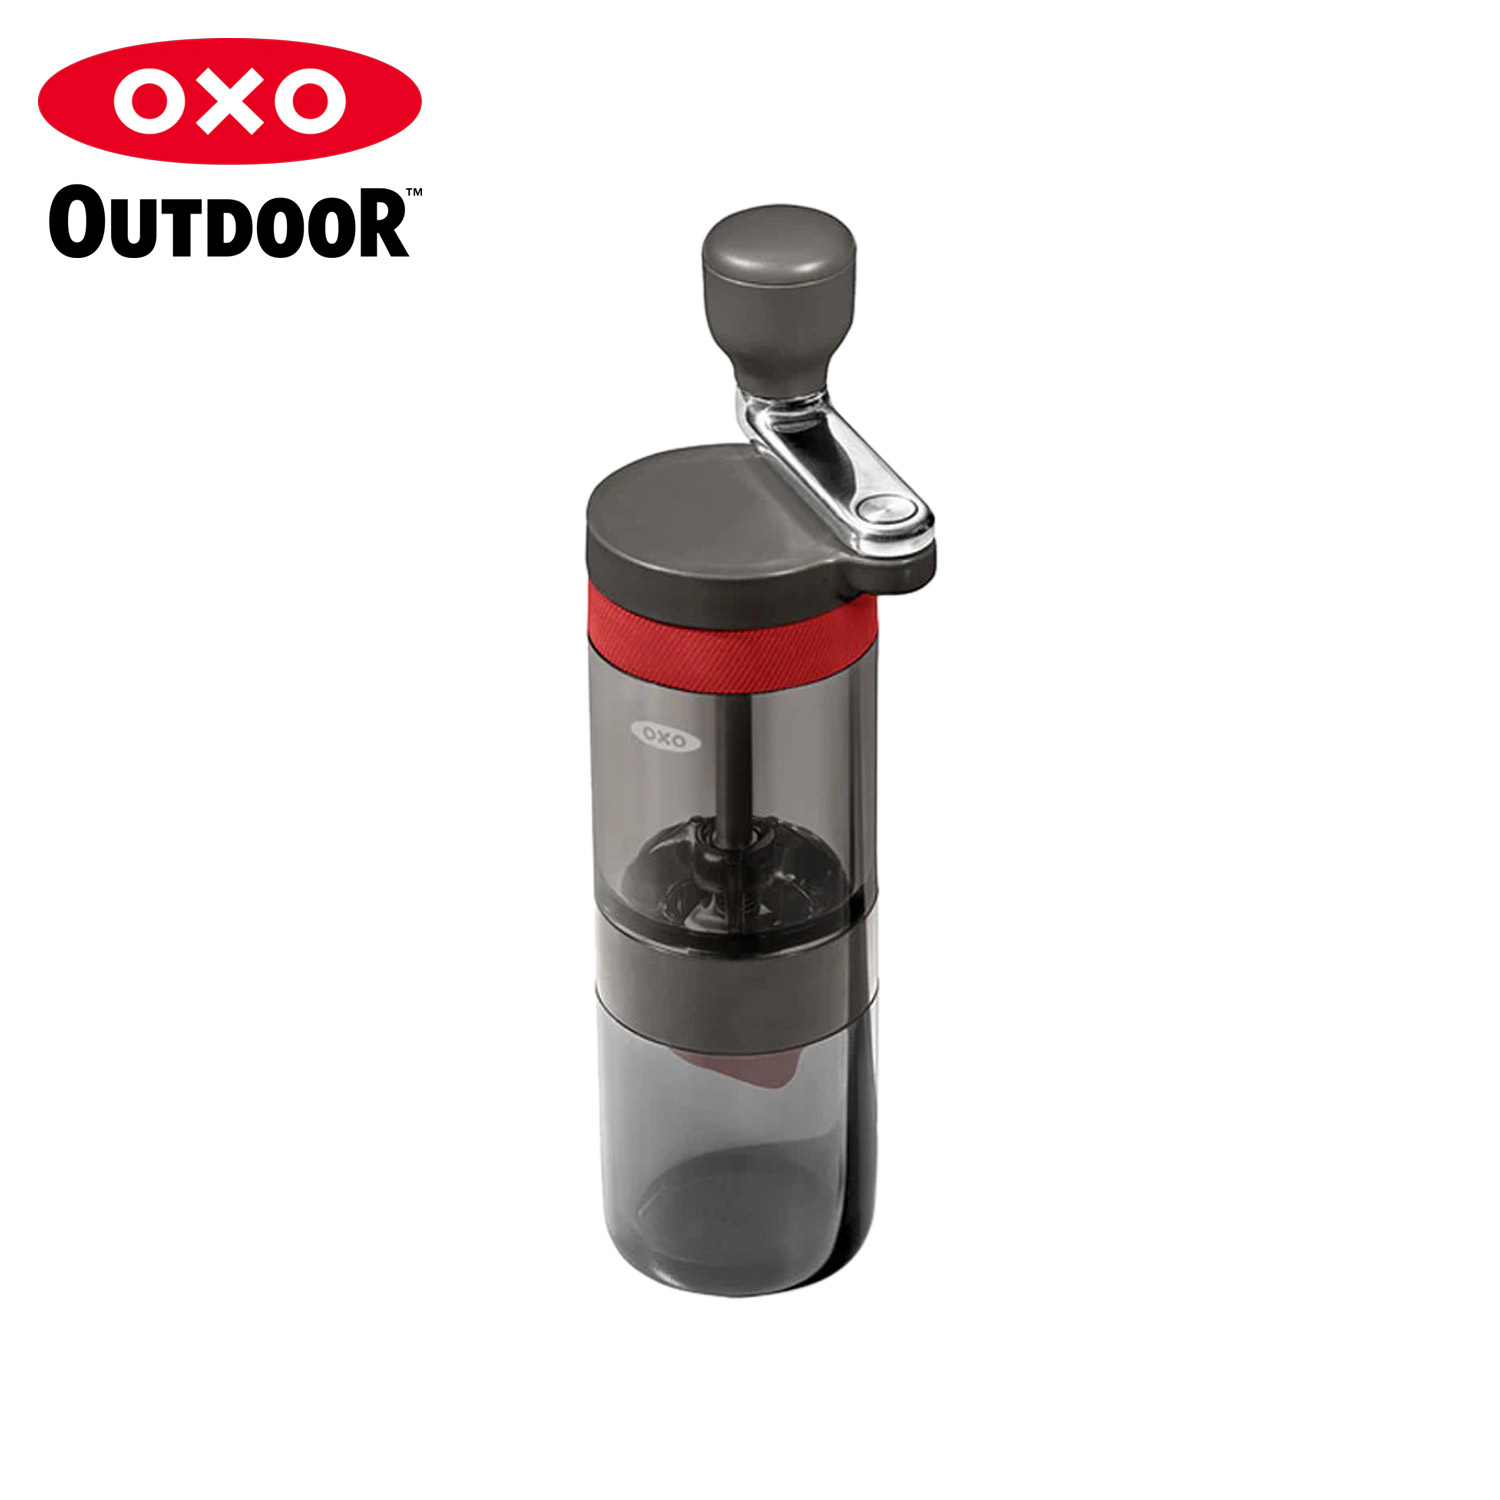 OXO OUTDOOR コンパクトコーヒーグラインダー オクソー アウトドア コーヒーミル 手動 コーヒーグラインダー 手挽き 豆挽き コンパクト 小型 携帯 9109100